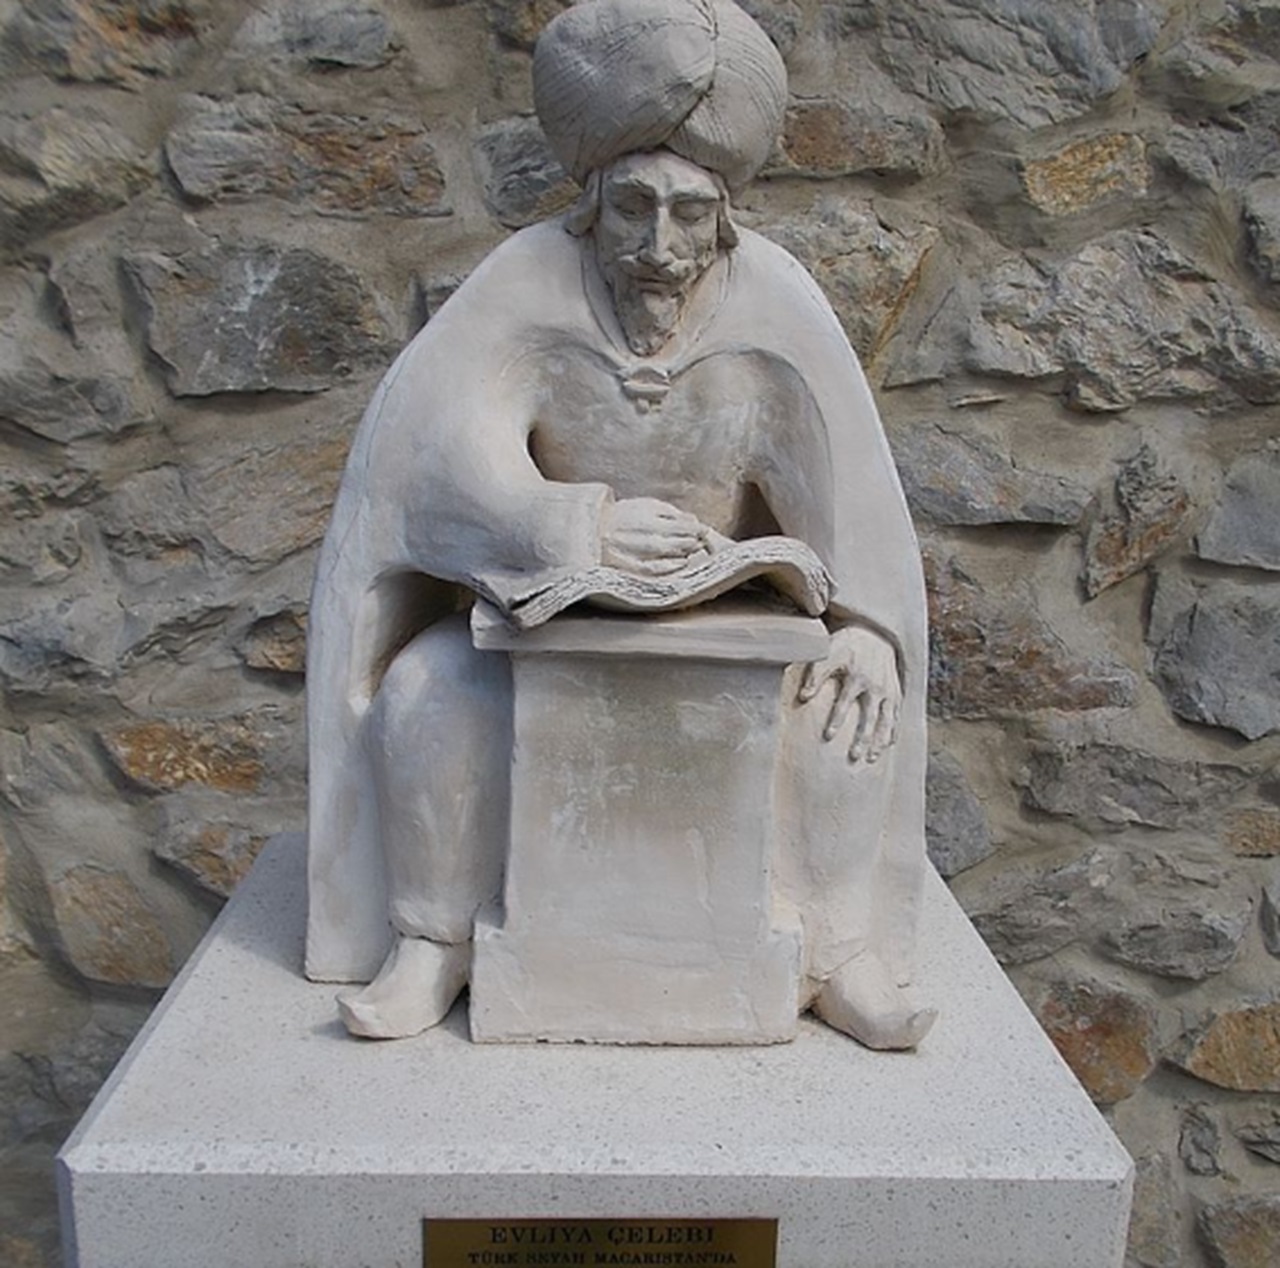 Uomo-Razzo racconto di Evliya Celebi, statua dell'autore